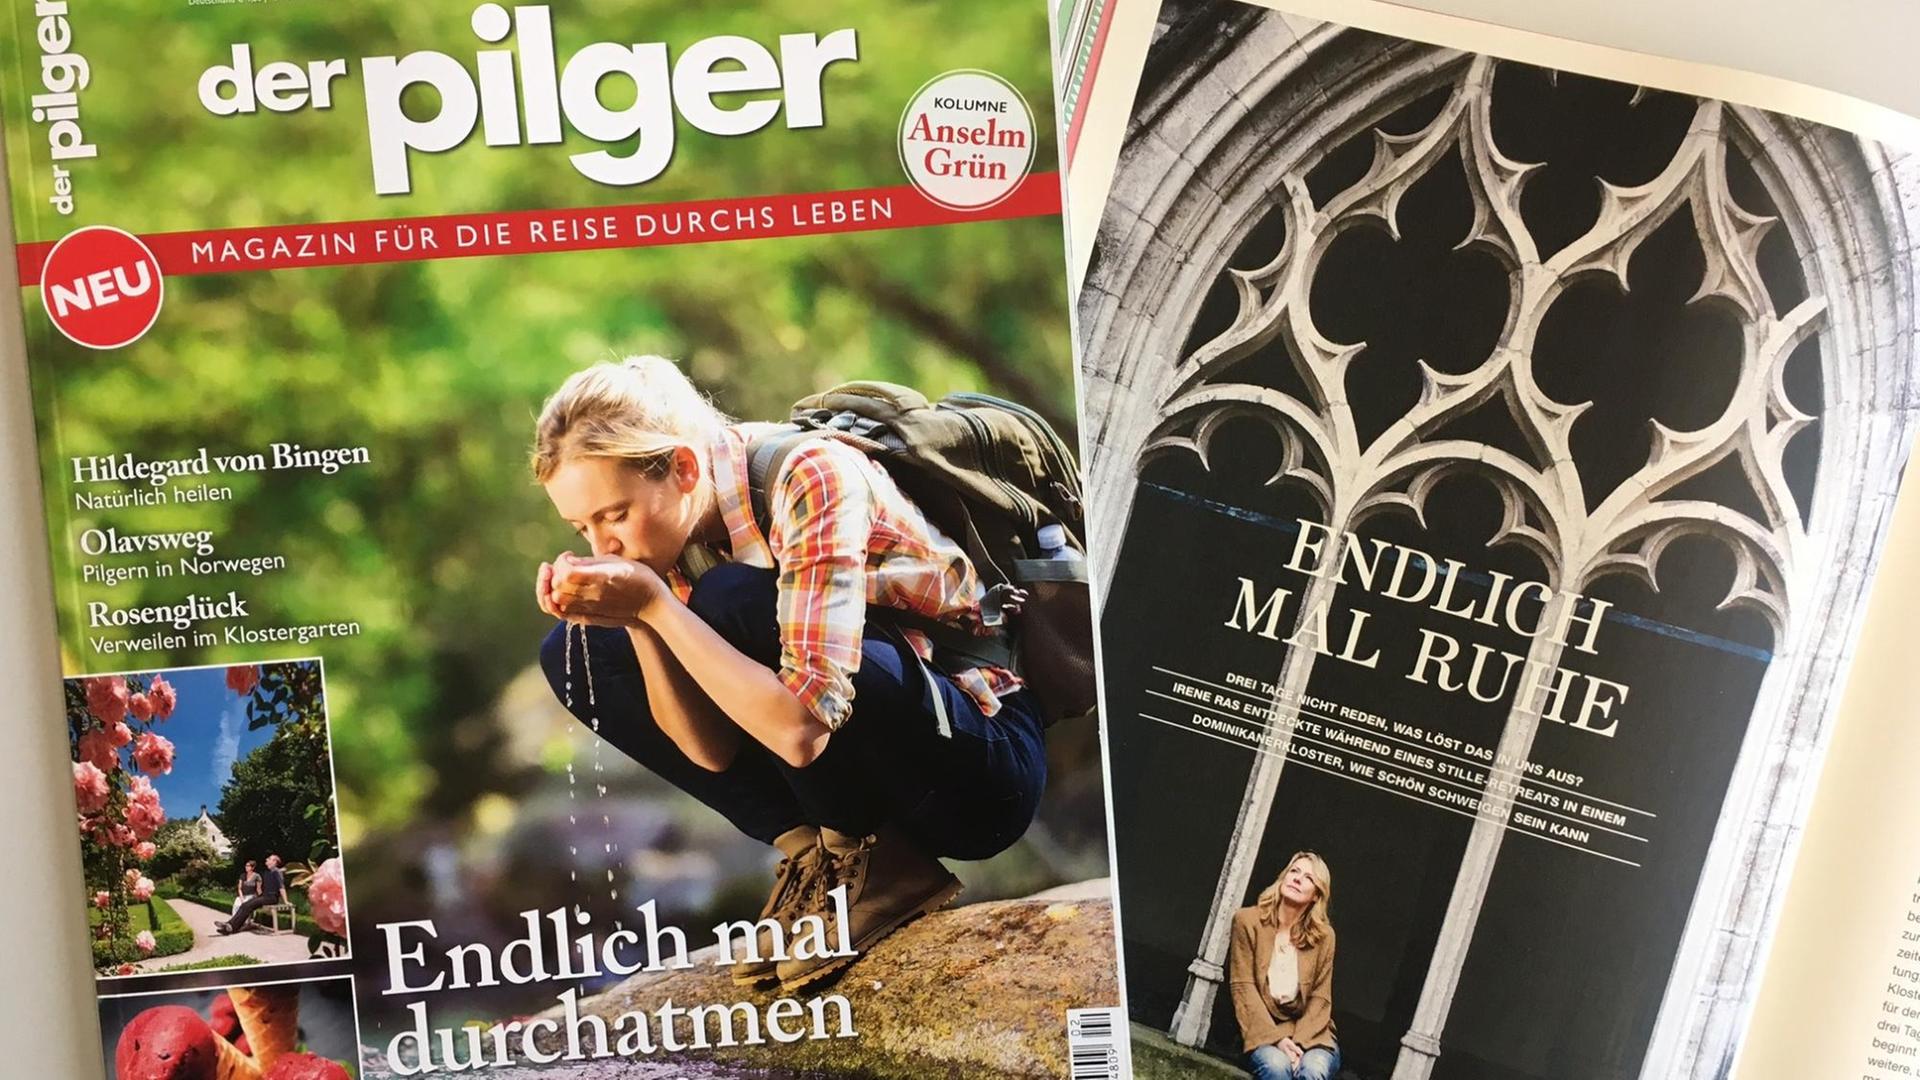 Die Zeitschriften Der Pilger und Flow (aufgeschlagen) - beide mit Texten wie "Endlich mal durchatmen" beziehungsweise "Endlich mal Ruhe"(Bild: Deutschlandfunk / Christiane Florin)